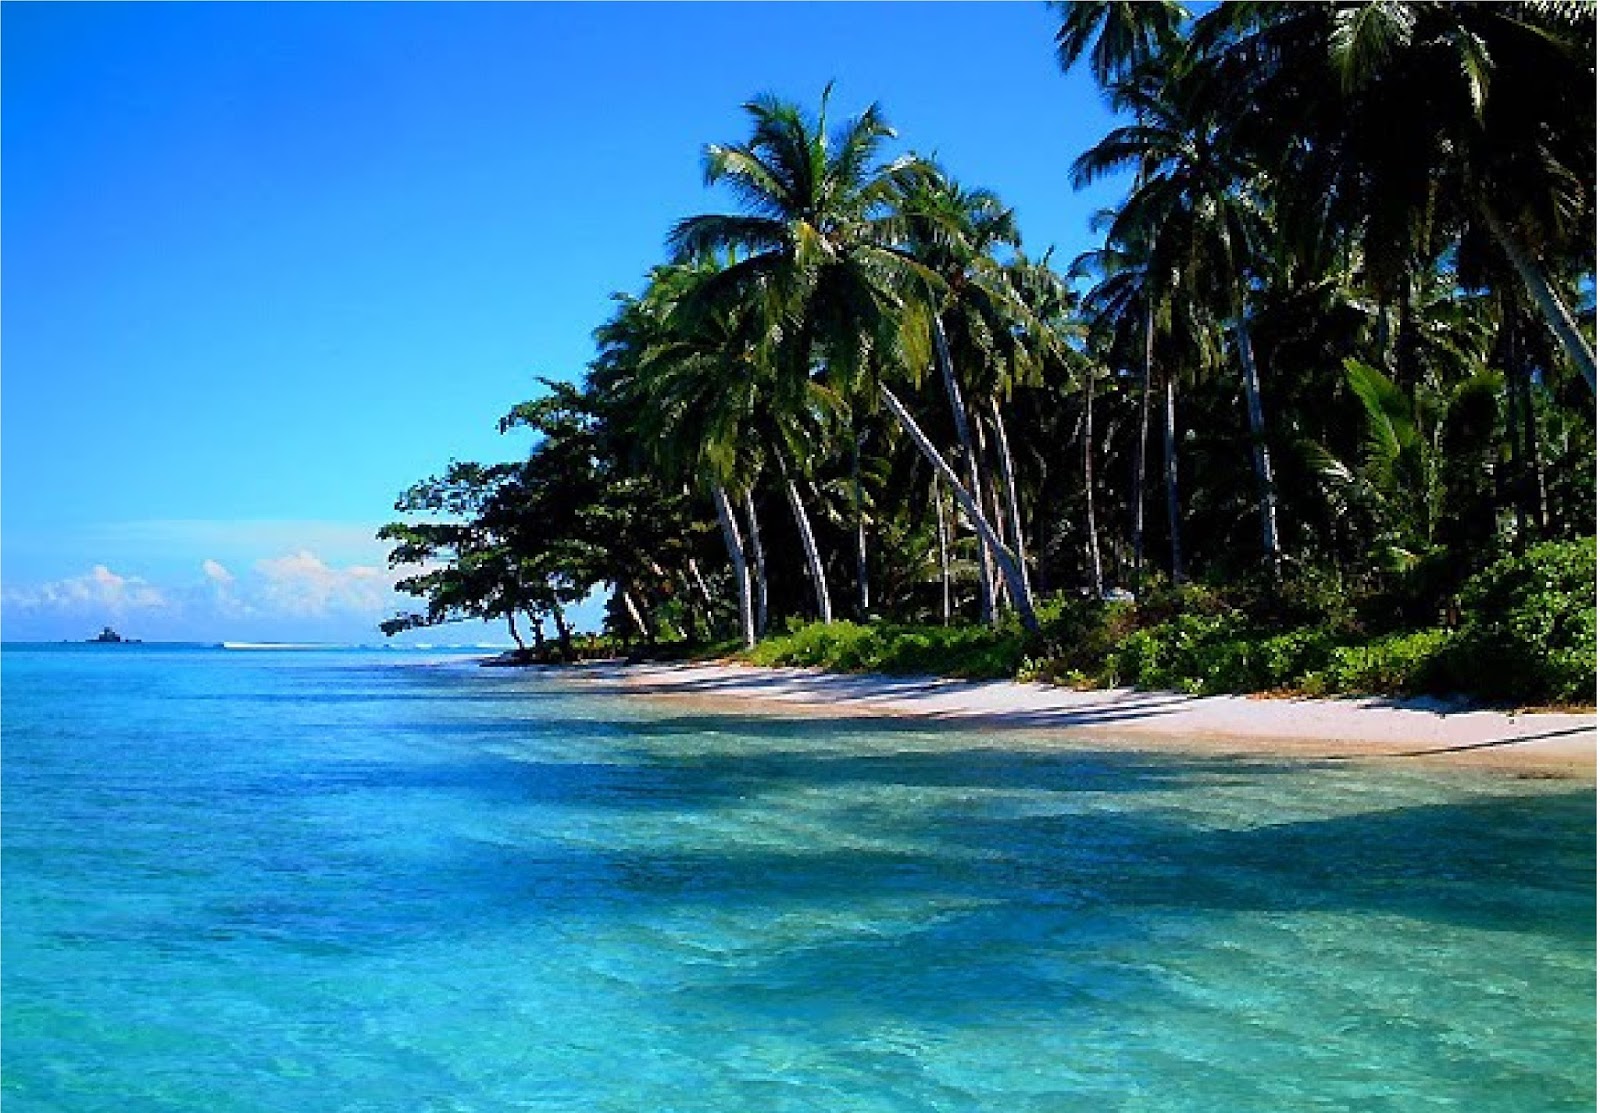 Tempat Berlibur Wisata Pulau Nias Yang Indah Dan Bagus - Tempat